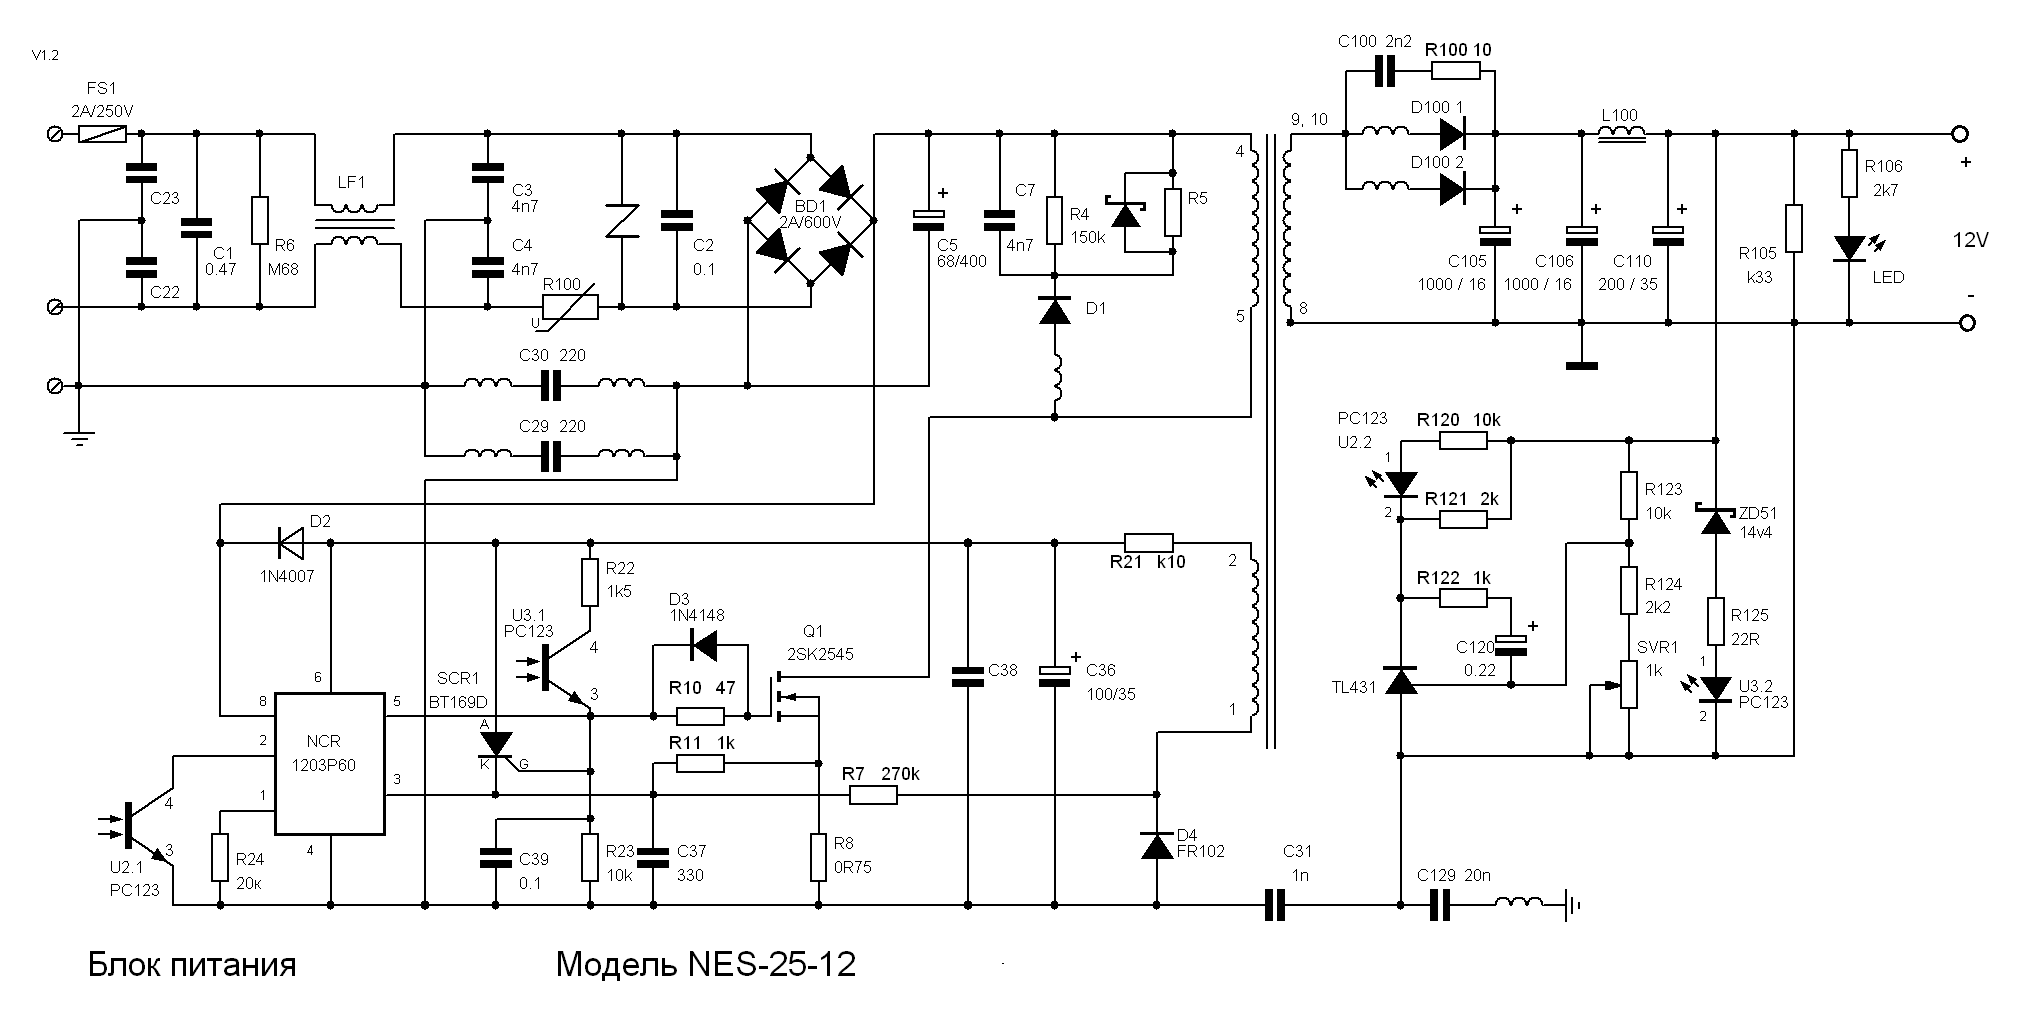 Tl60717-460.PCB схема